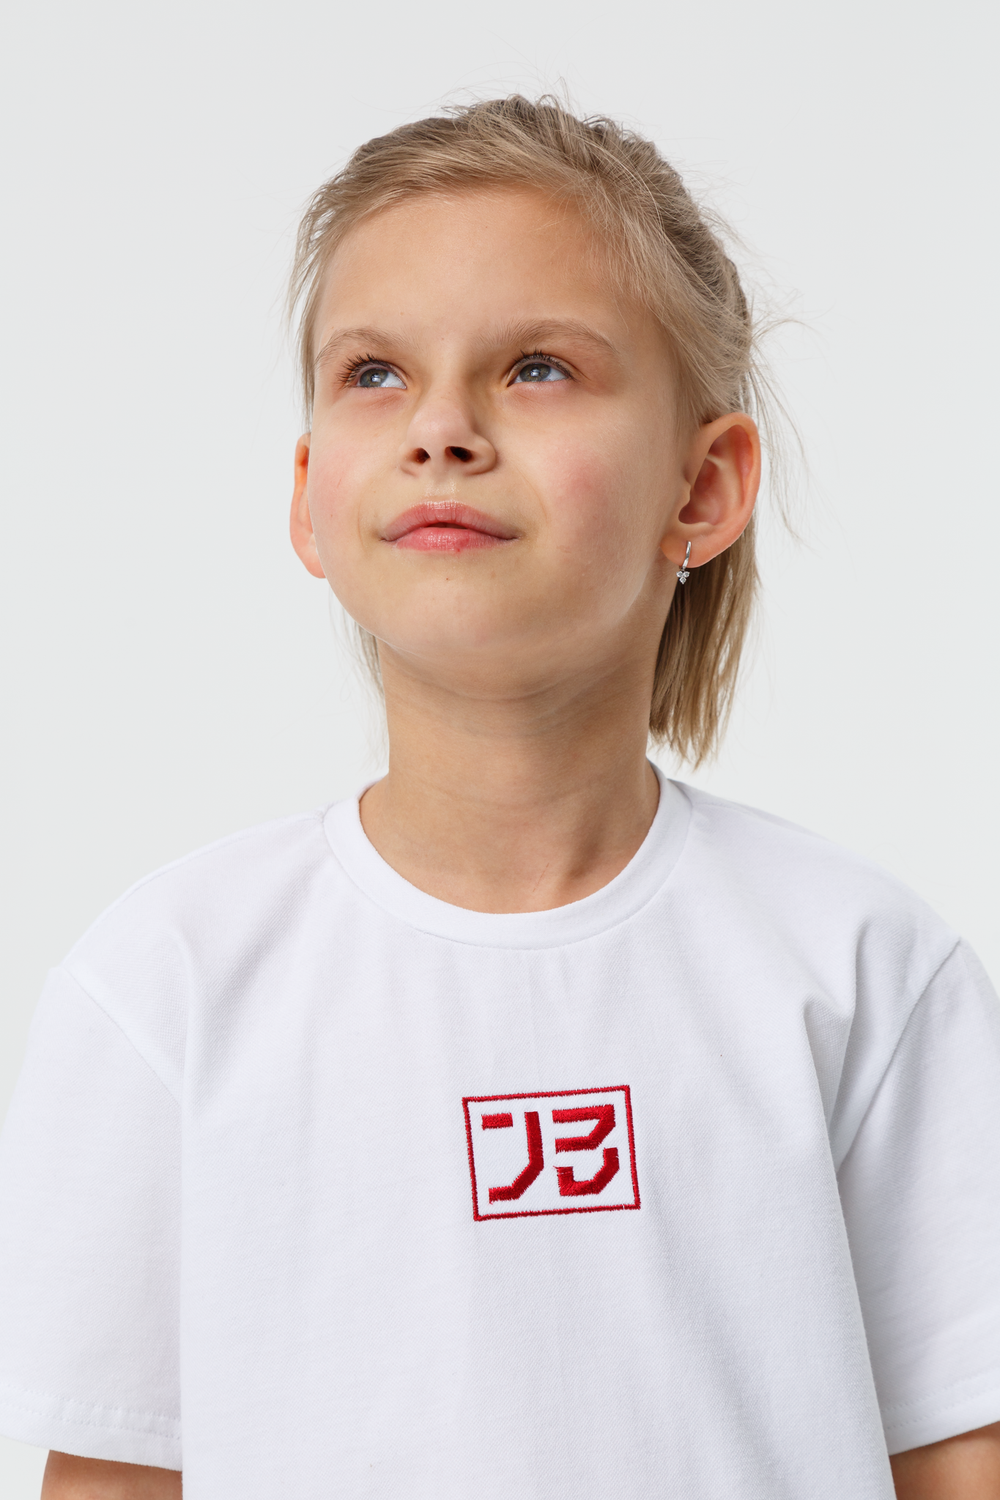 Детская футболка judo kids JB